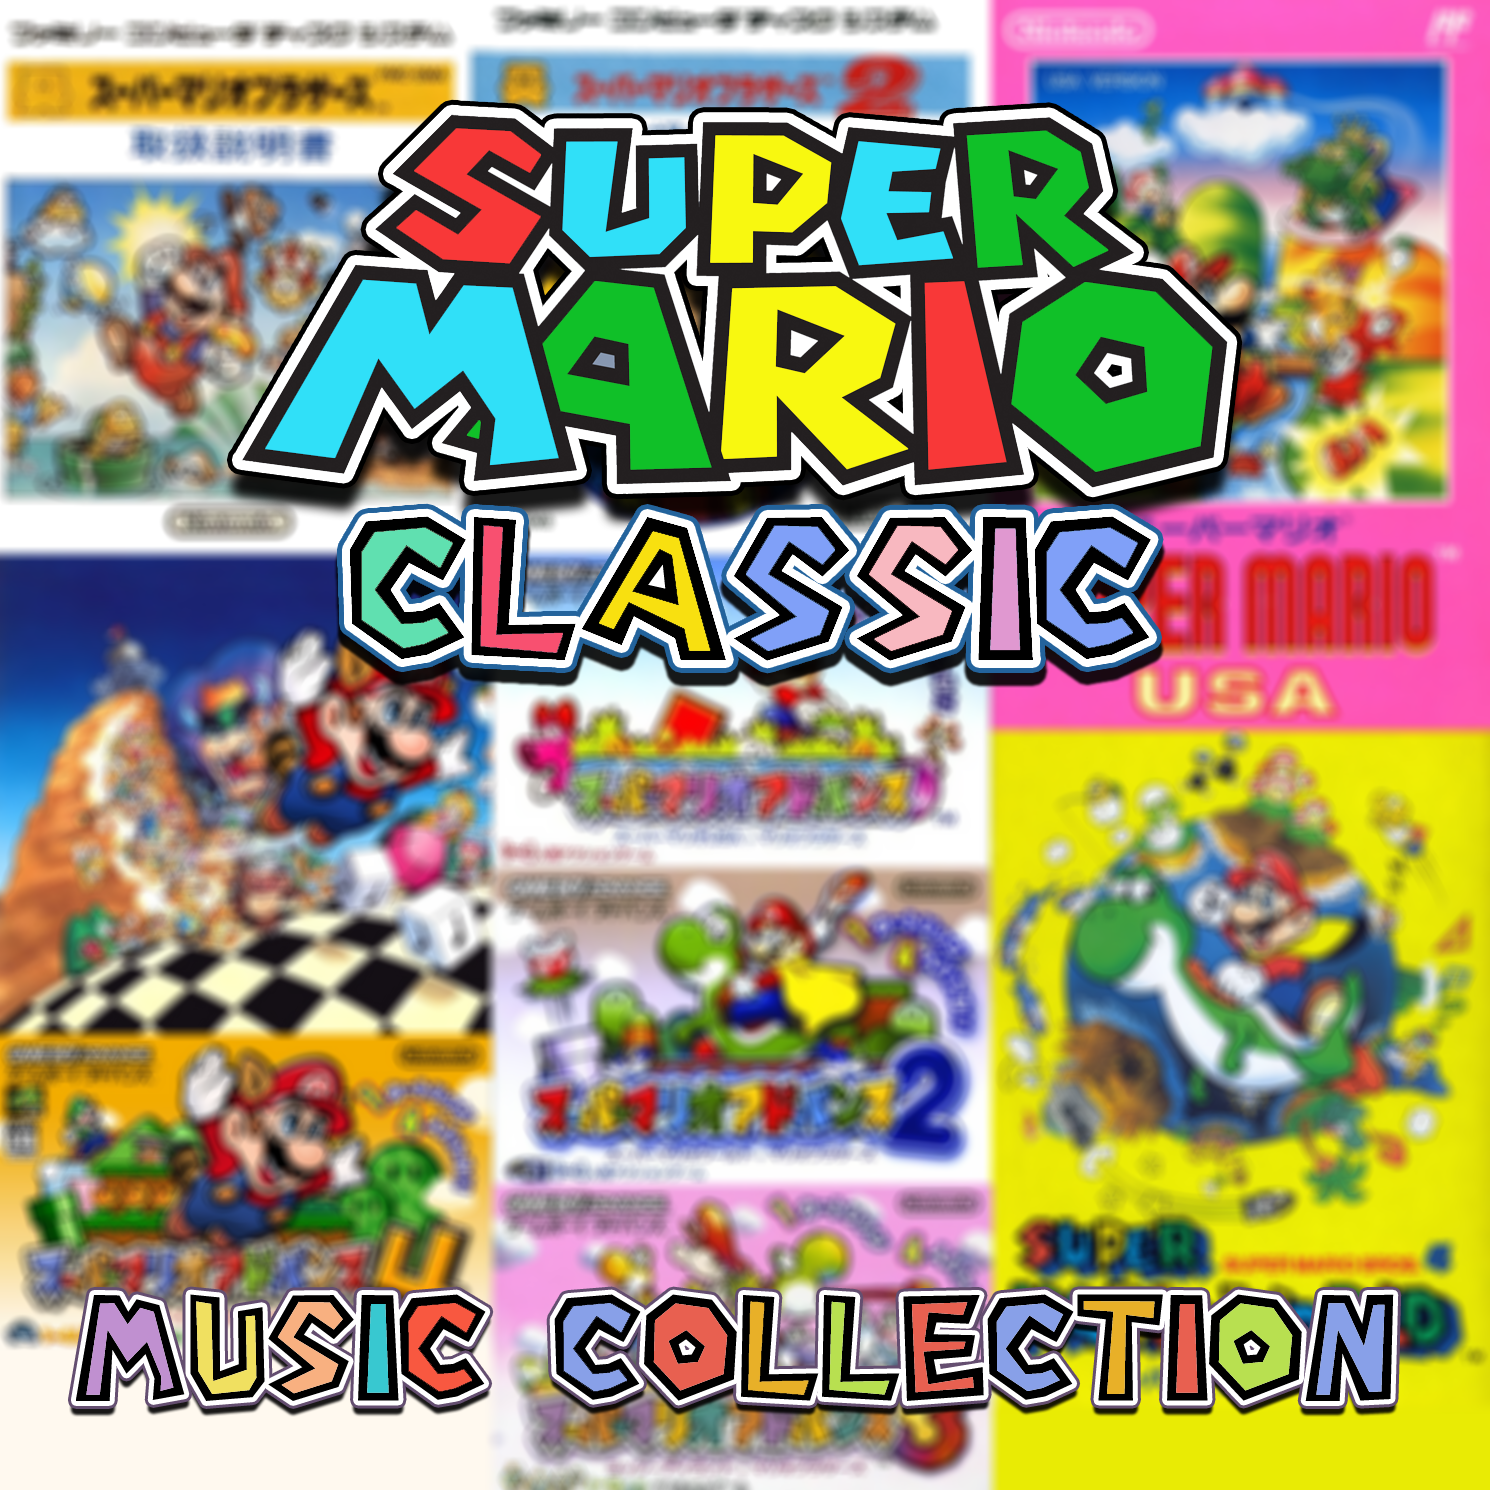 Super Mario Bros. 2 (NES, Family Computer) (gamerip) (1988) MP3 - Download  Super Mario Bros. 2 (NES, Family Computer) (gamerip) (1988) Soundtracks for  FREE!